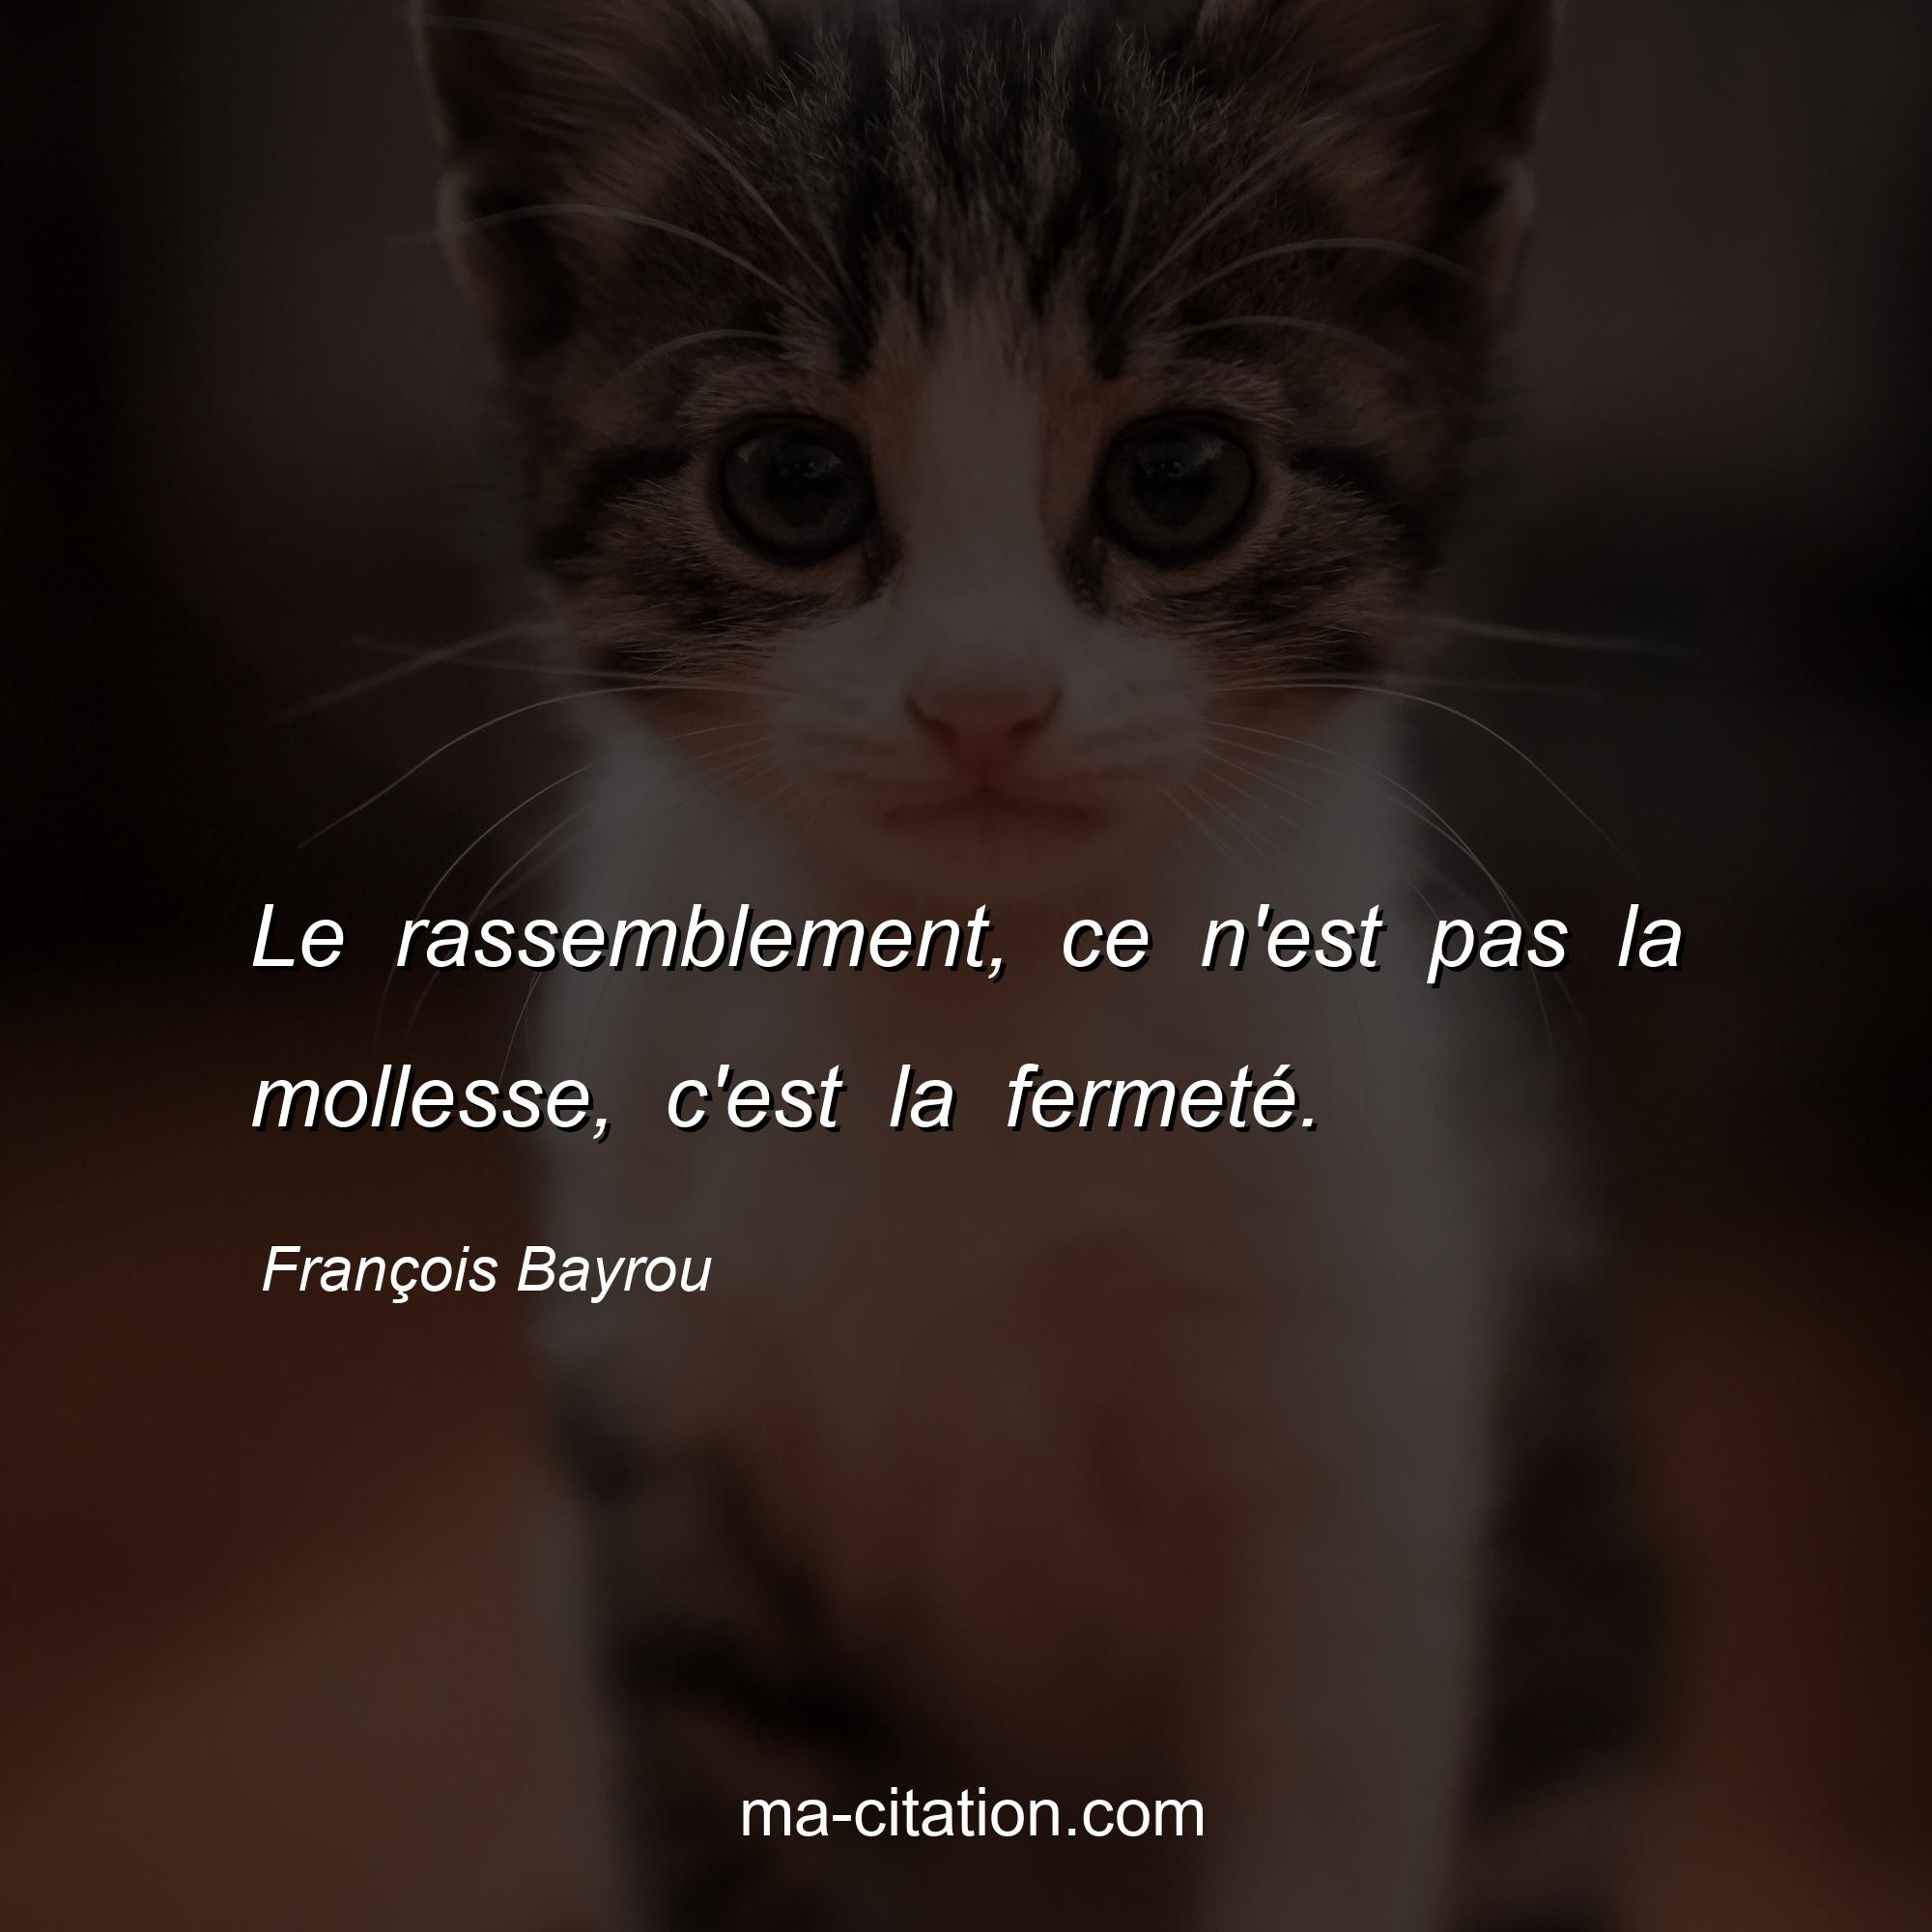 François Bayrou : Le rassemblement, ce n'est pas la mollesse, c'est la fermeté.